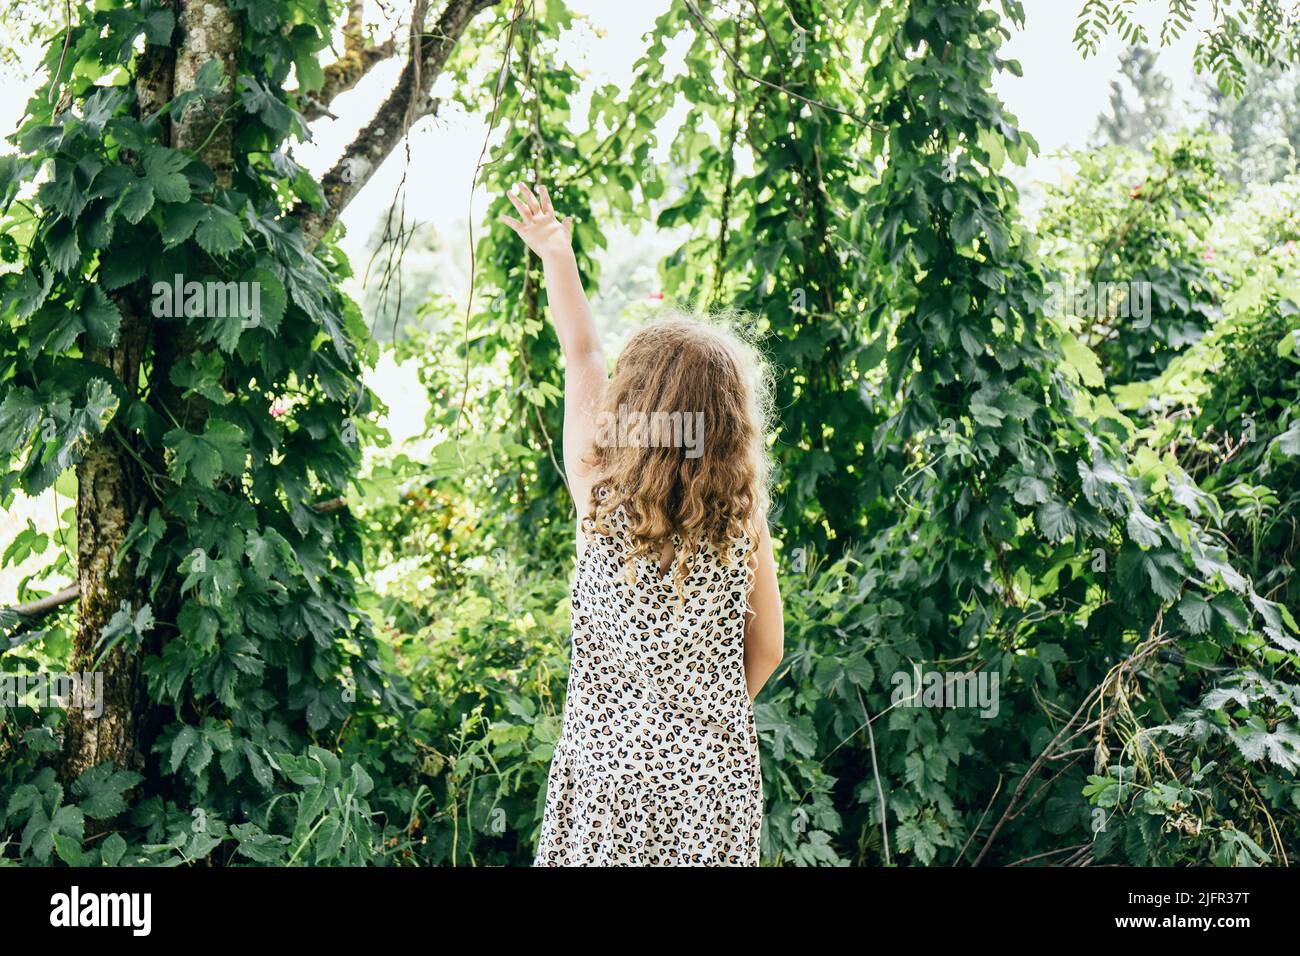 Humulus lupulus o lúpulo común o lúpulo plantas de decoración subir en brotes de árboles de hormiga en el jardín de casa, joven de 8 años de edad de pie entre la planta creciente Foto de stock